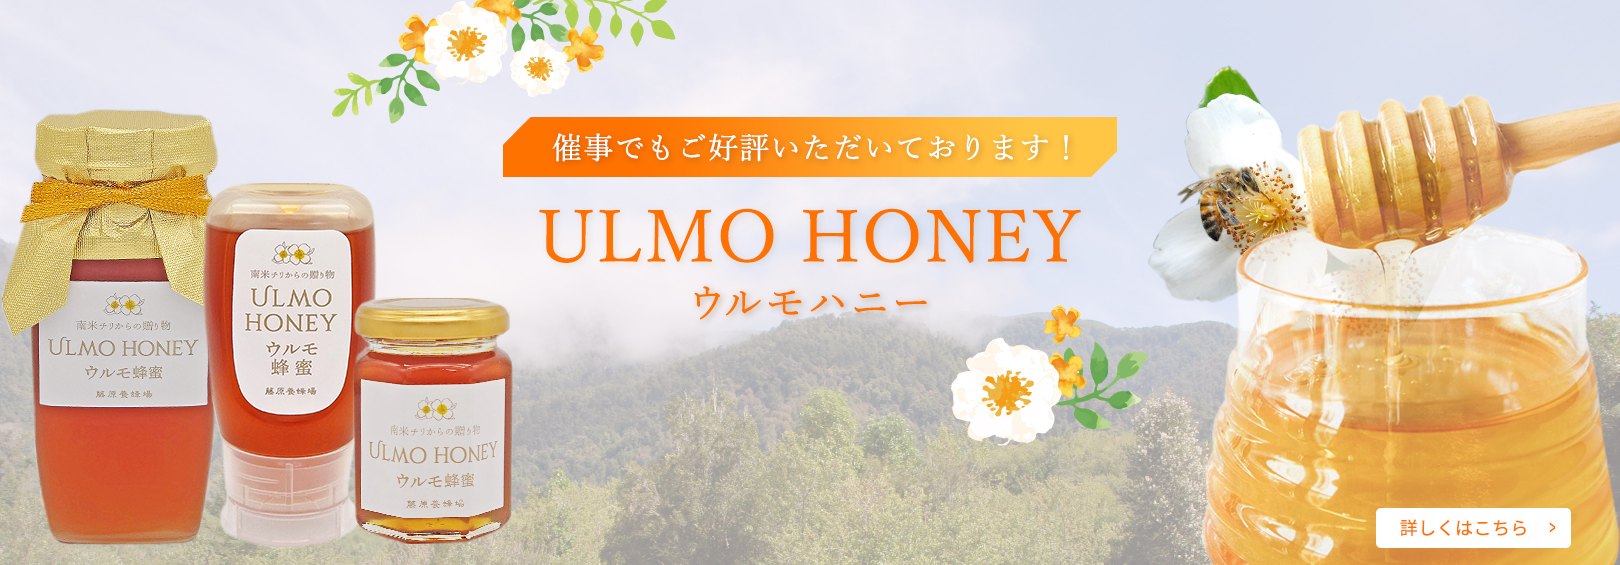 国産はちみつ 日本ミツバチのハチミツ 藤原養蜂場の日本在来種みつばち